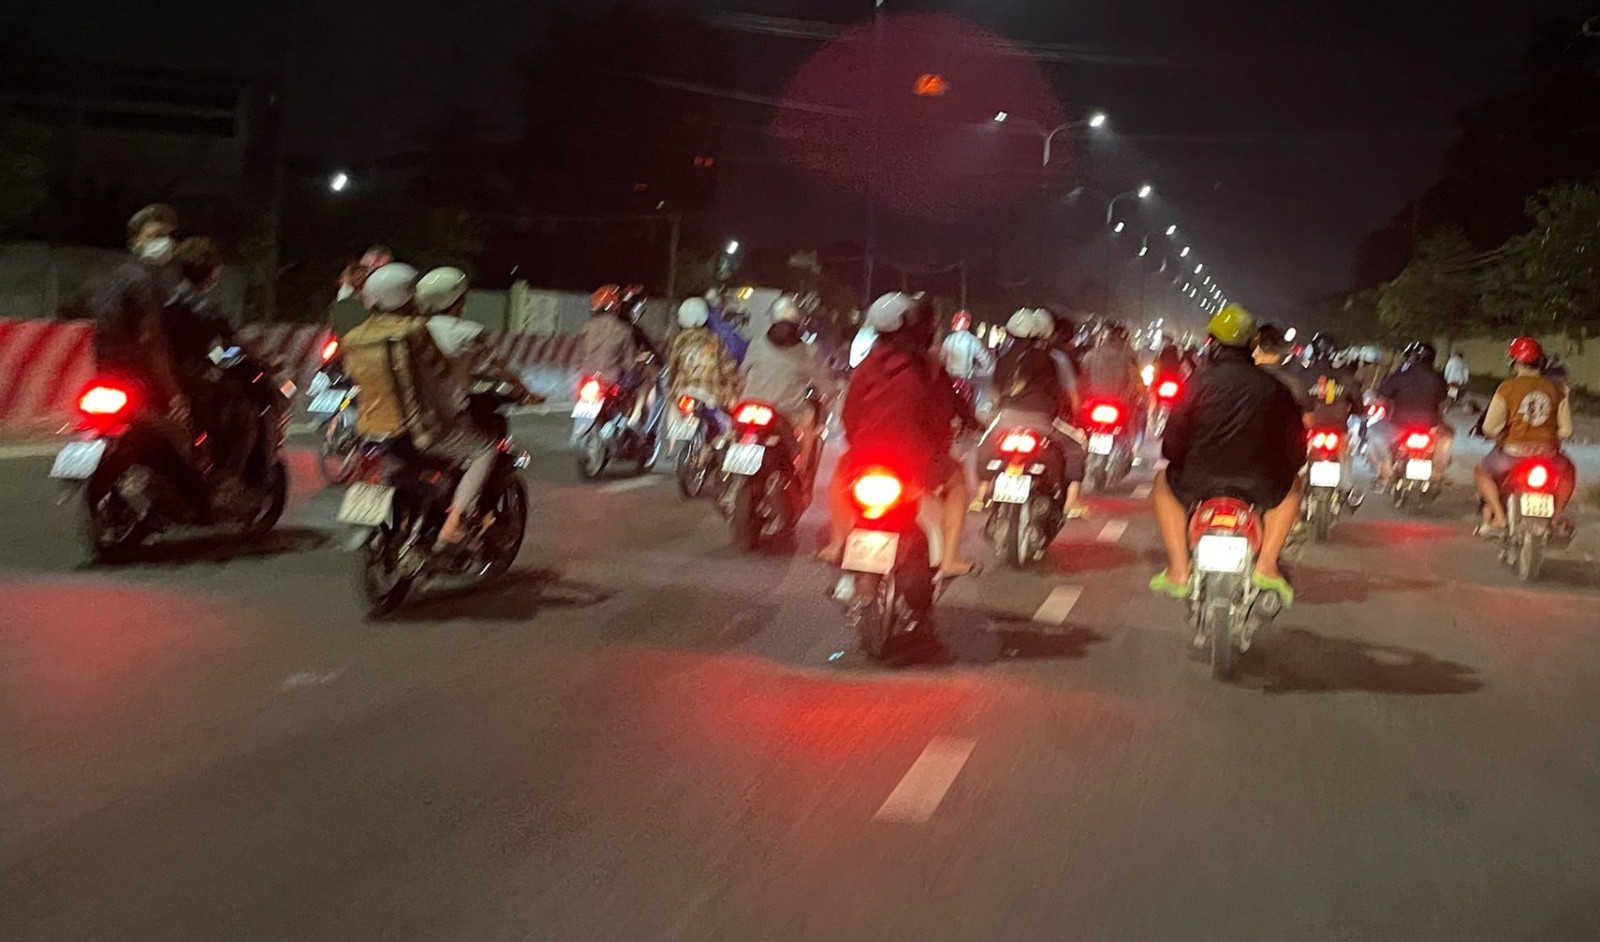 Bạn sẽ không thể rời mắt khỏi hình ảnh những chiếc xe máy đầy tốc độ chạy trên đường phố vắng vẻ đầy lãng mạn vào ban đêm.